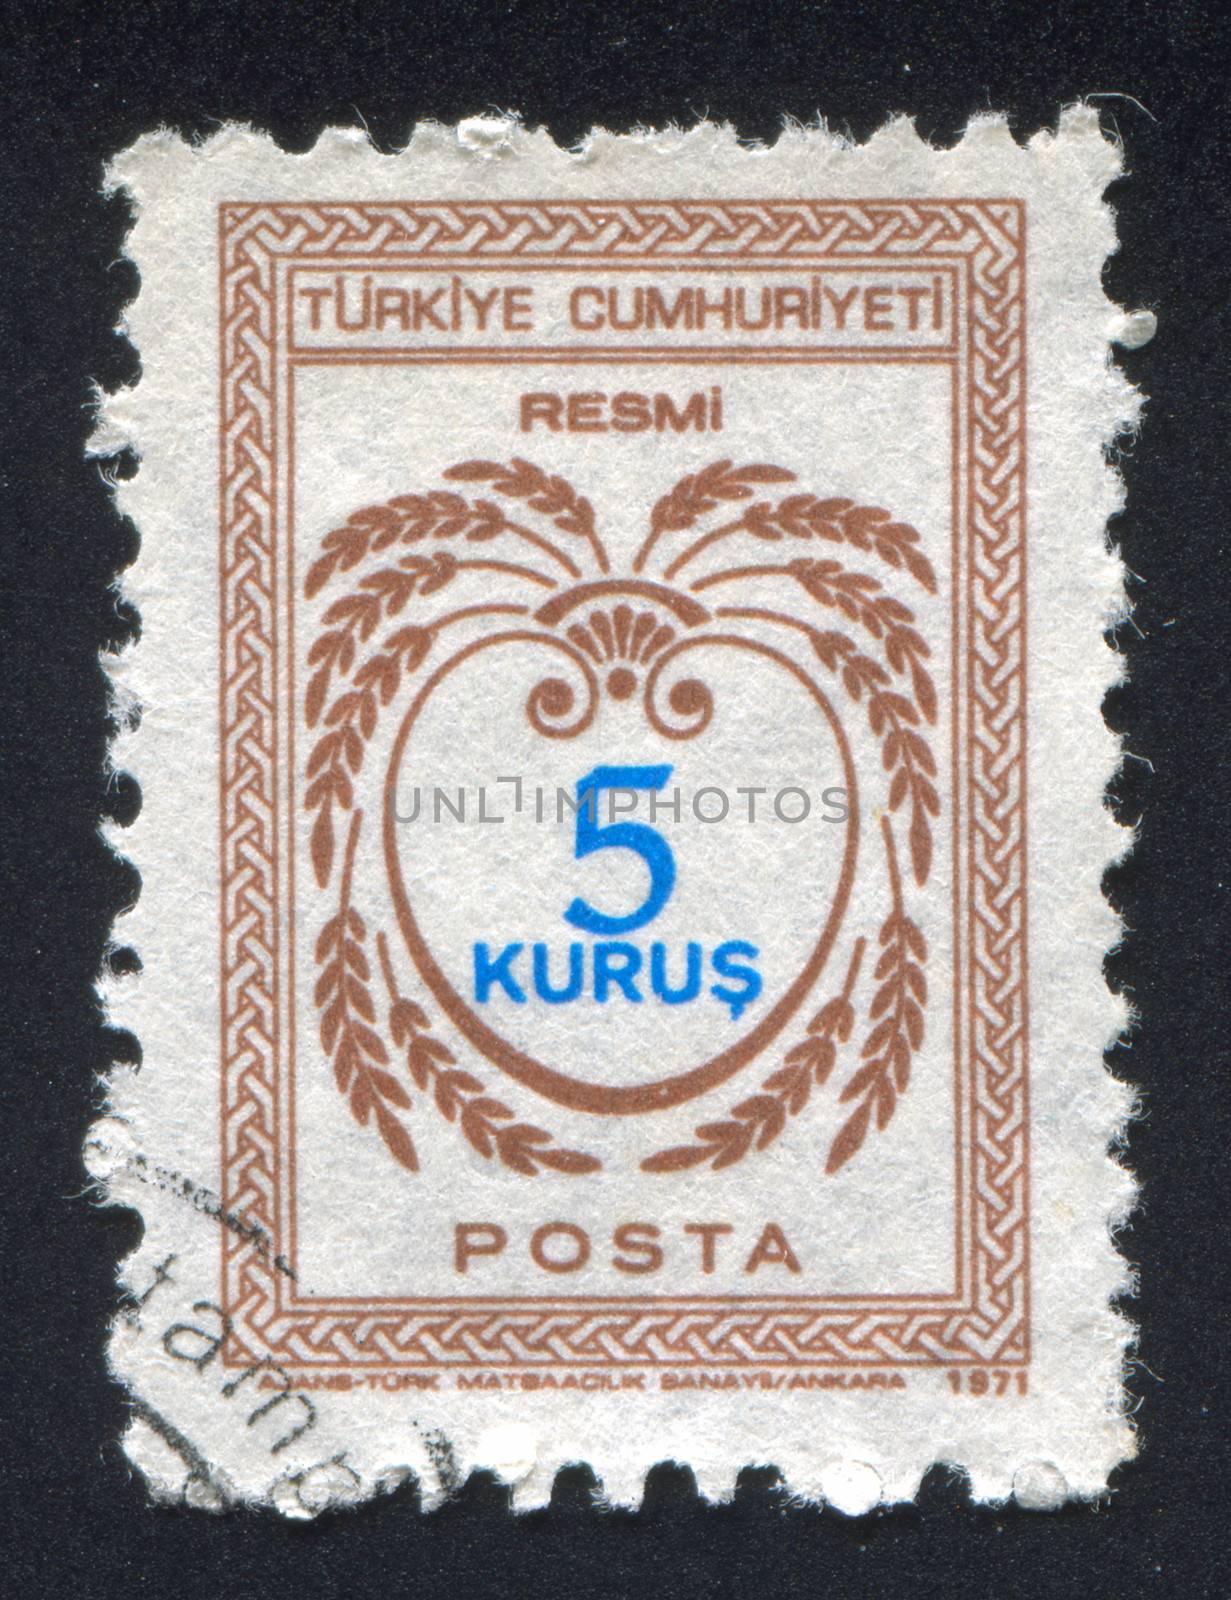 TURKEY - CIRCA 1971: stamp printed by Turkey, shows turkish pattern, circa 1971.